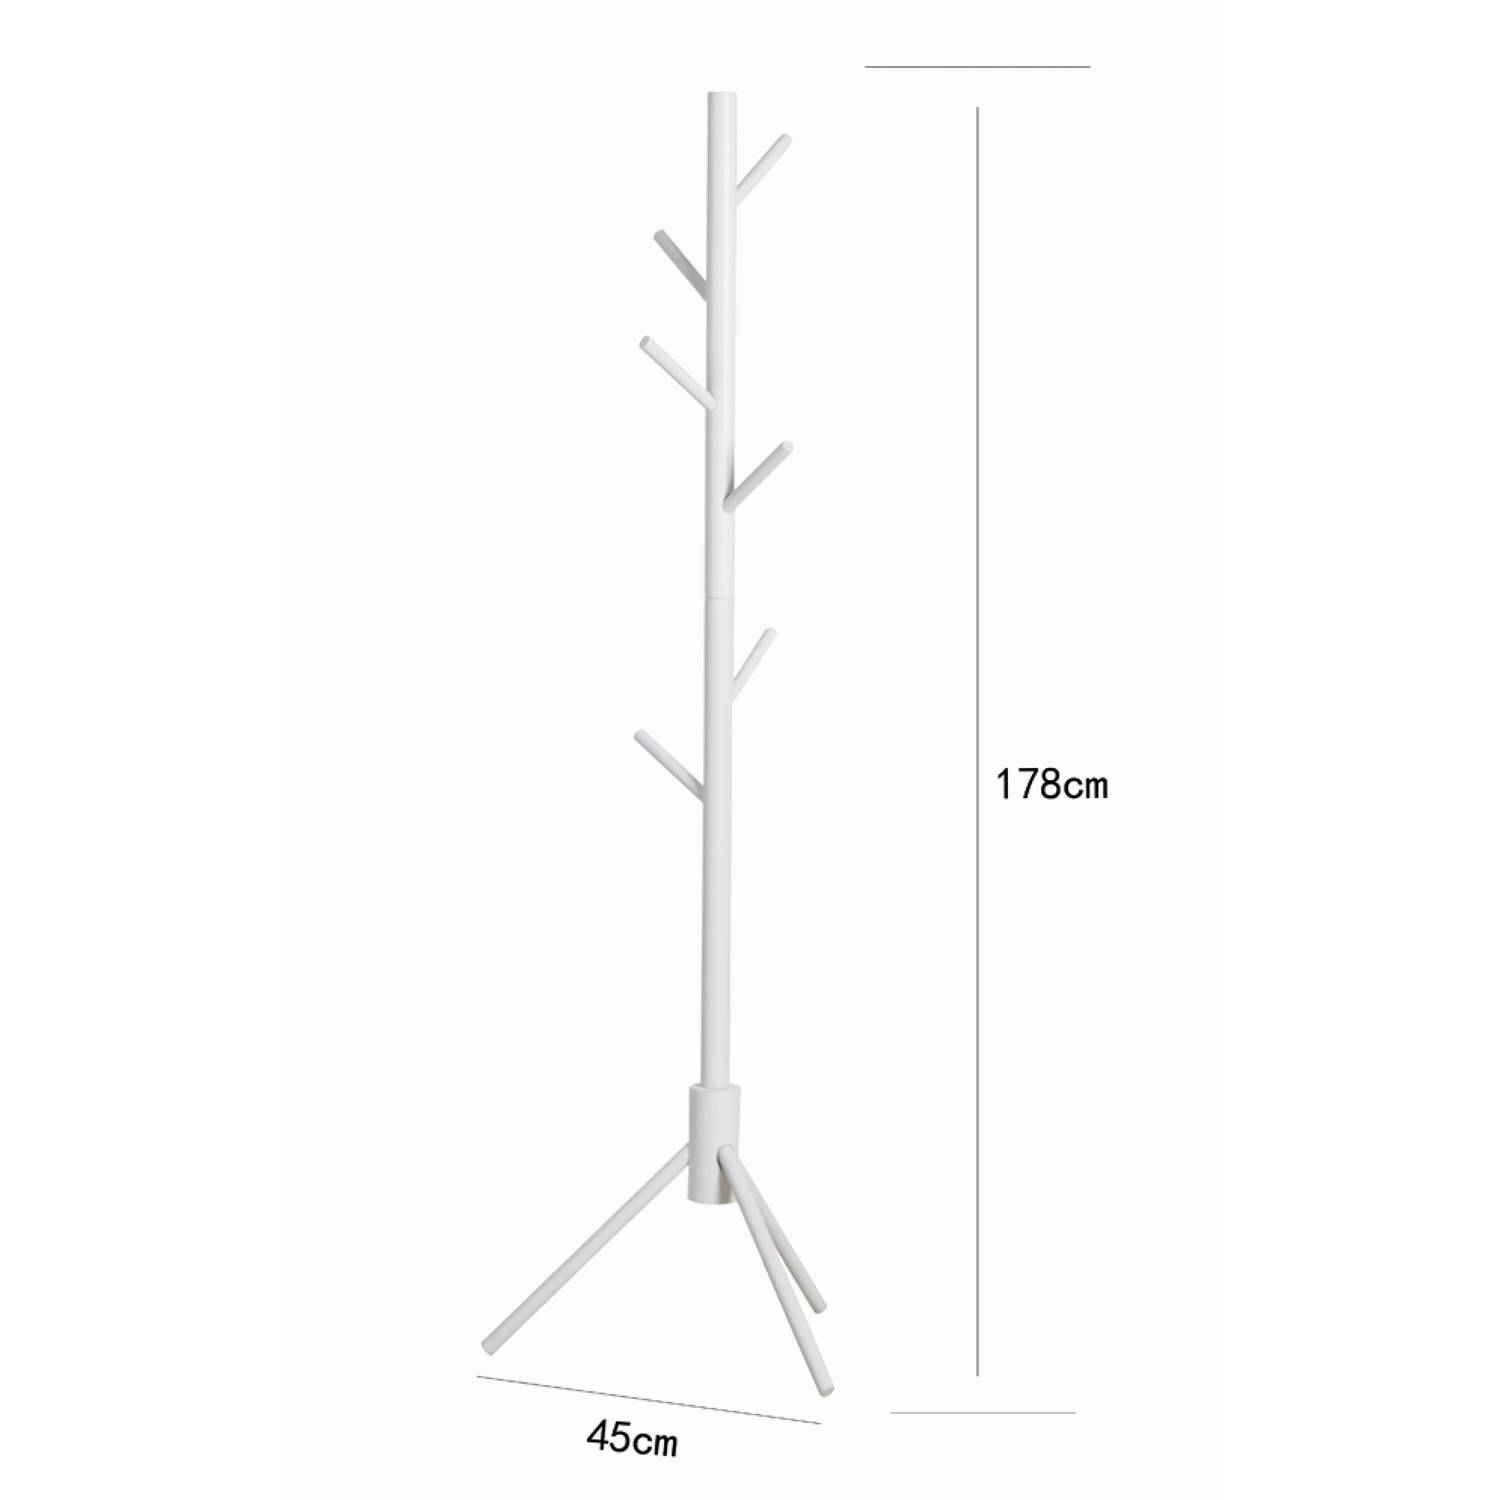 Interesseren Verwarren Aarzelen Staande kapstok - boom kapstok 8 haken hout - 178 cm hoog - wit | Blokker